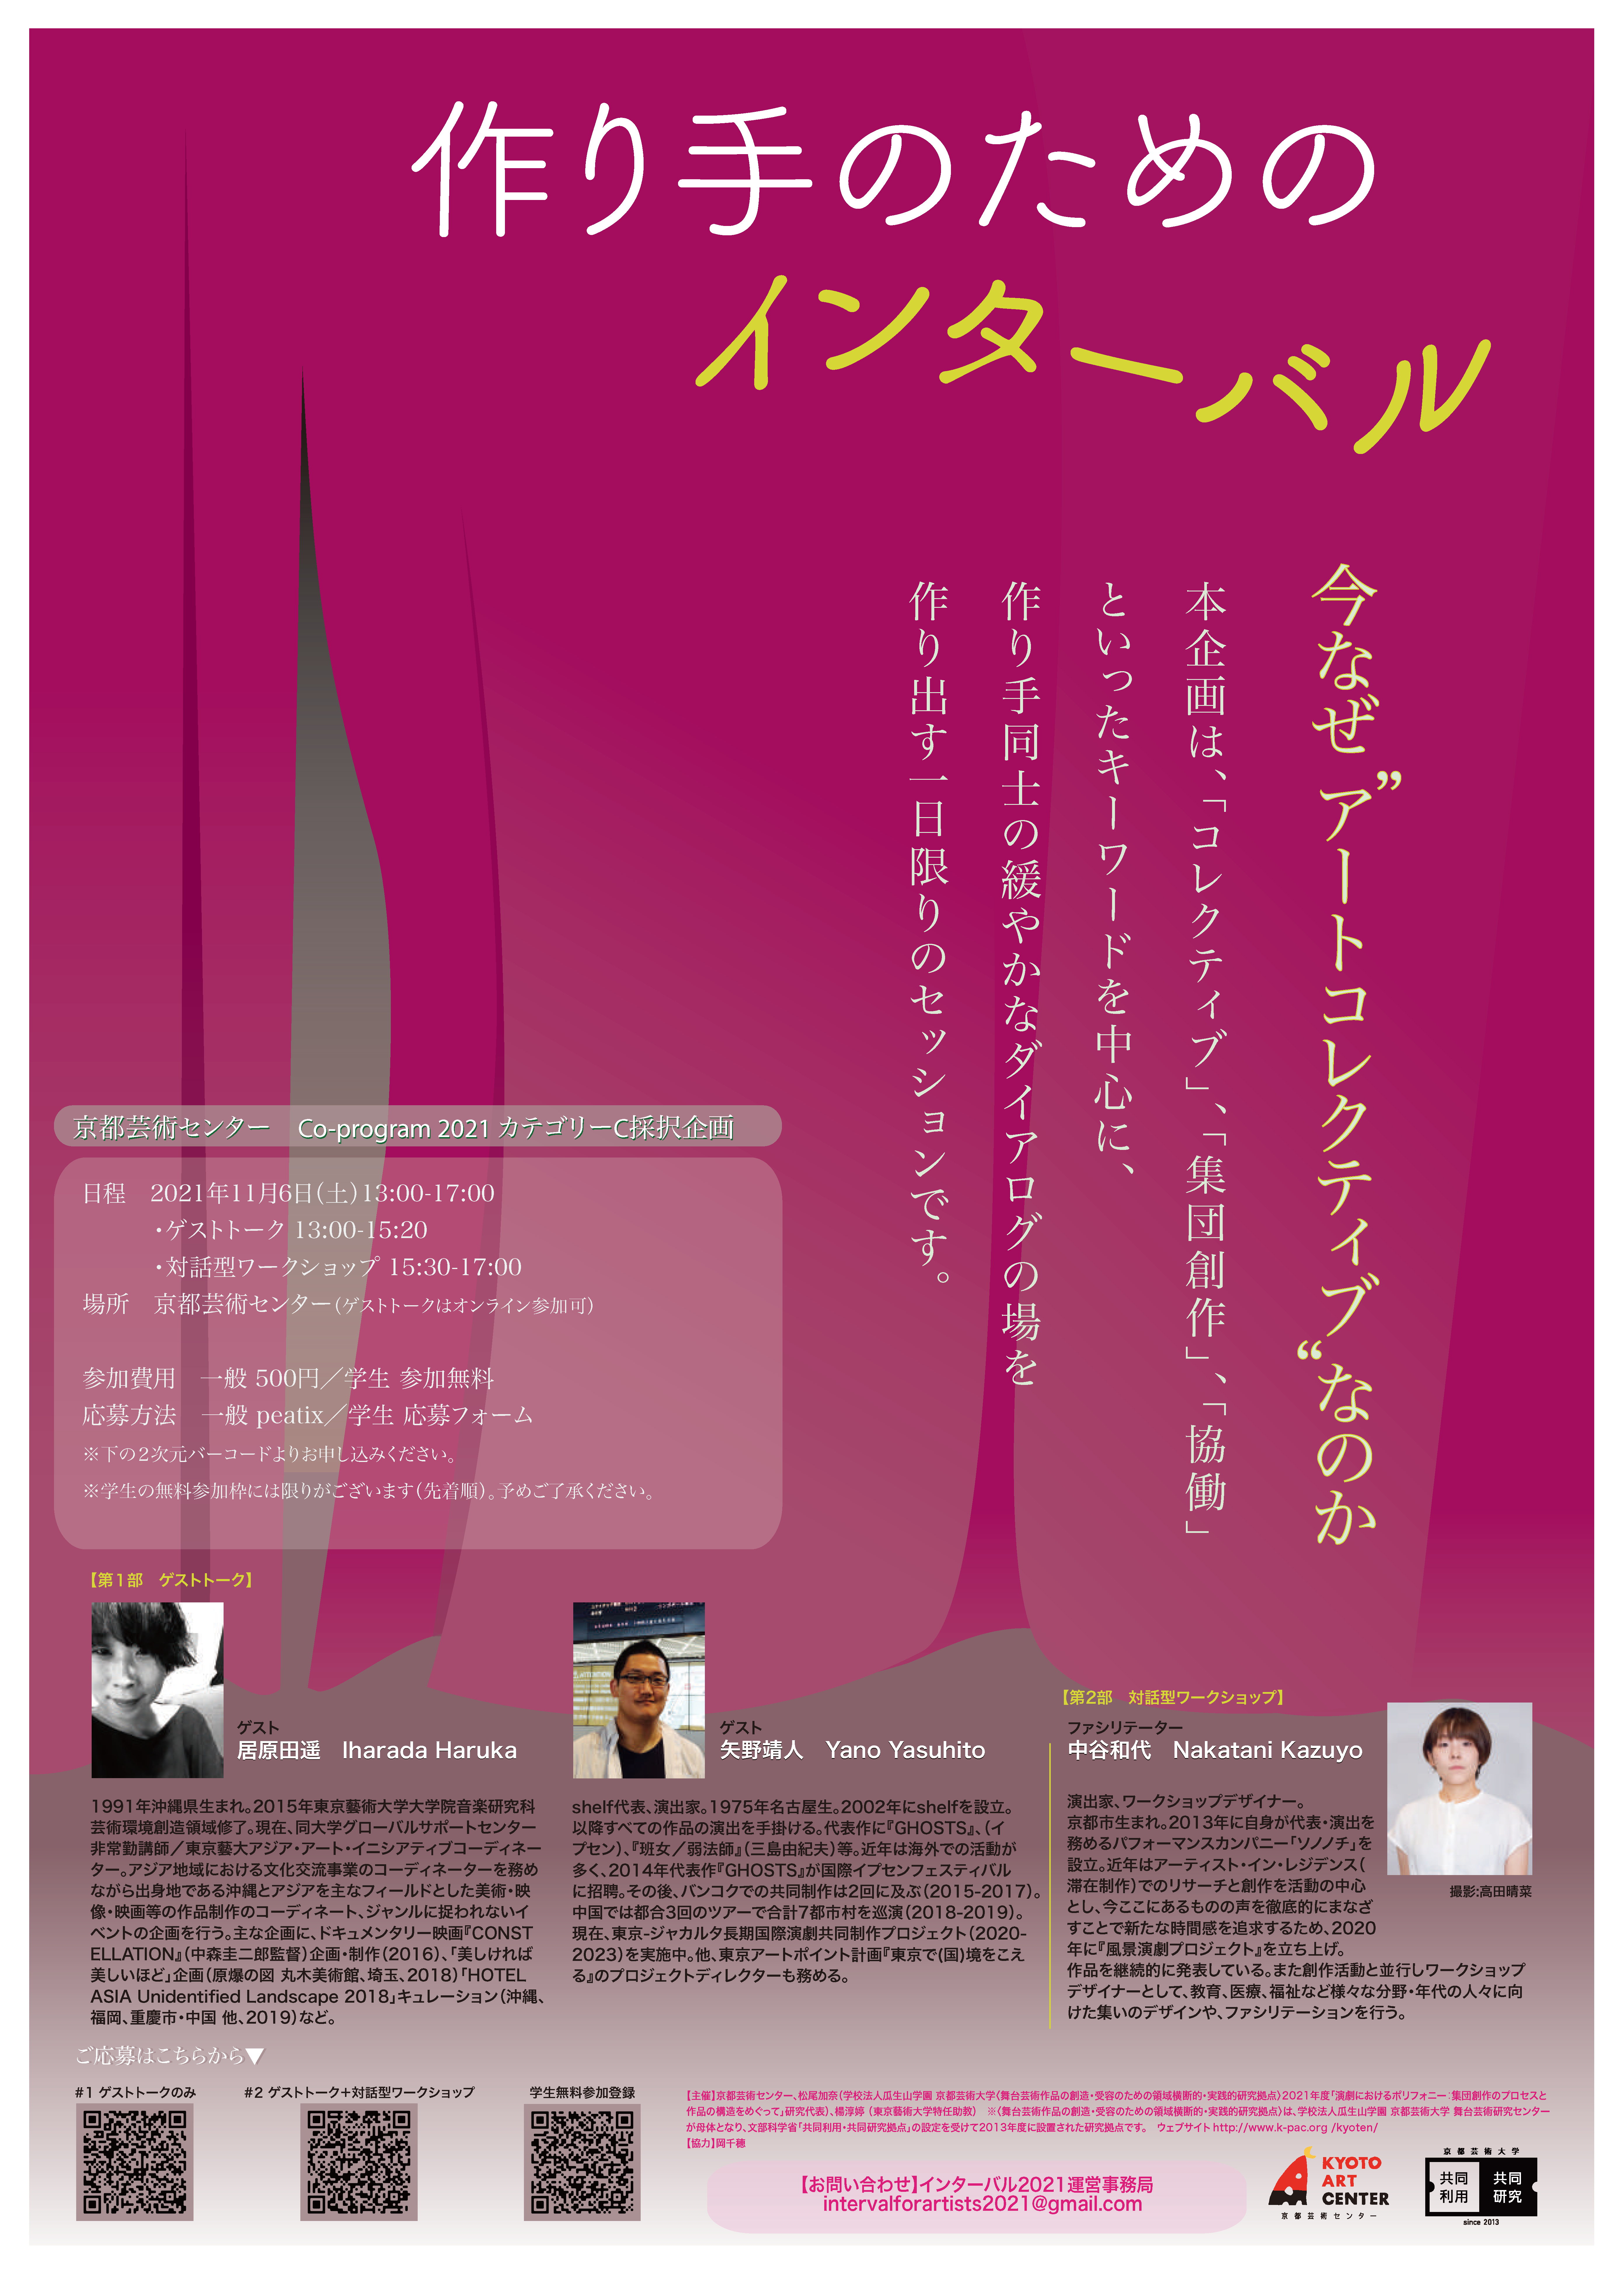 京都芸術センター Co-program2021 カテゴリーC 松尾加奈・楊淳婷「作り手のためのインターバルー今なぜ“アートコレクティブ”なのか—」